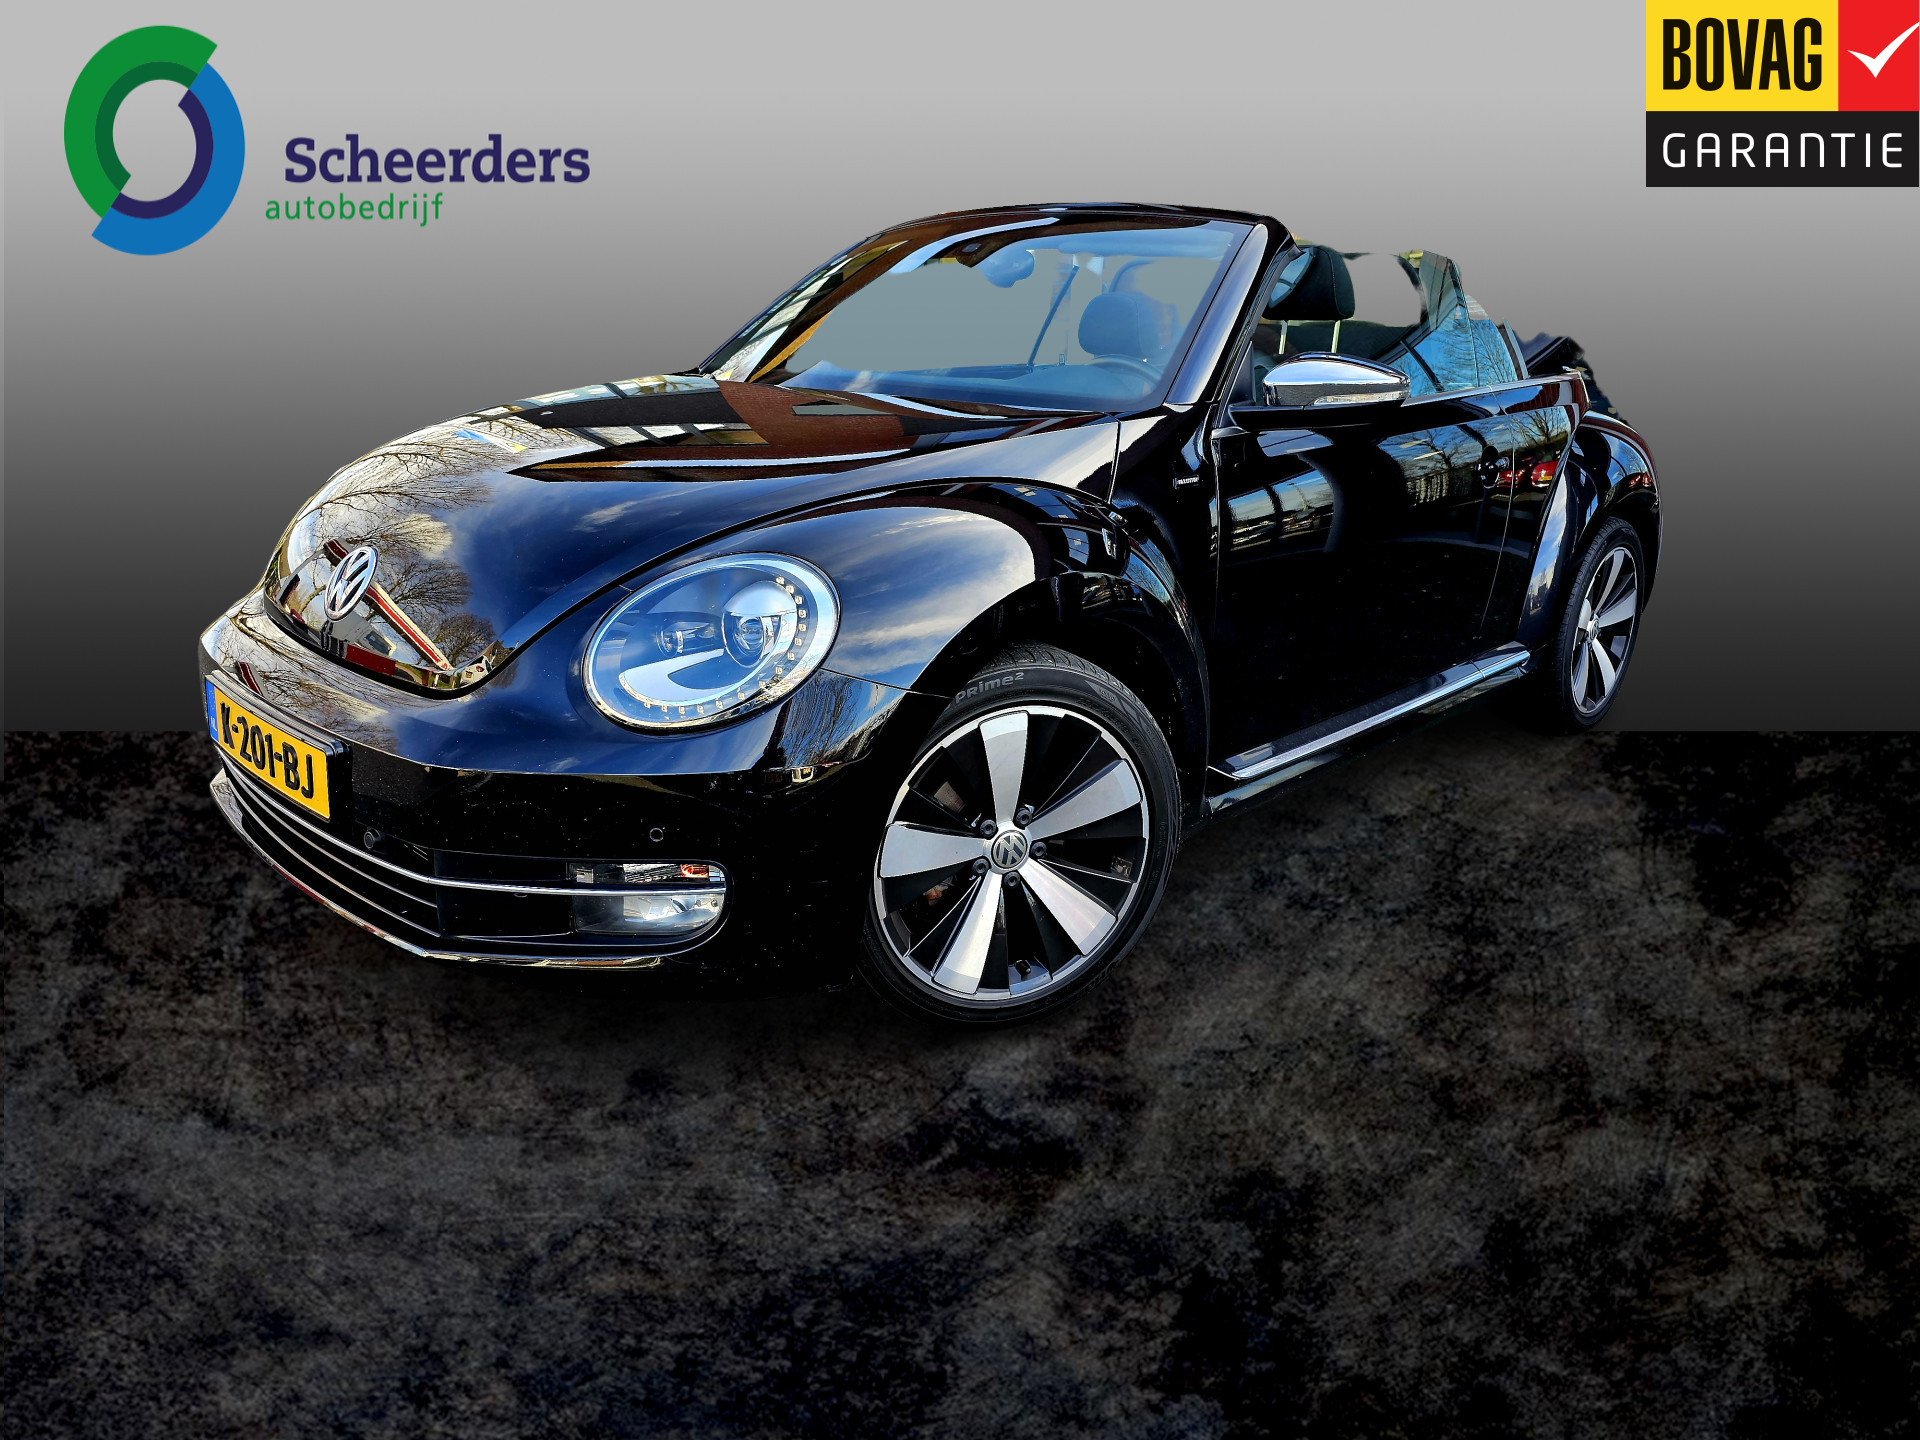 Volkswagen Beetle Cabriolet 1.4 TSI 150 pk Allstar,Navi 1 jaar garantie bij viaBOVAG.nl